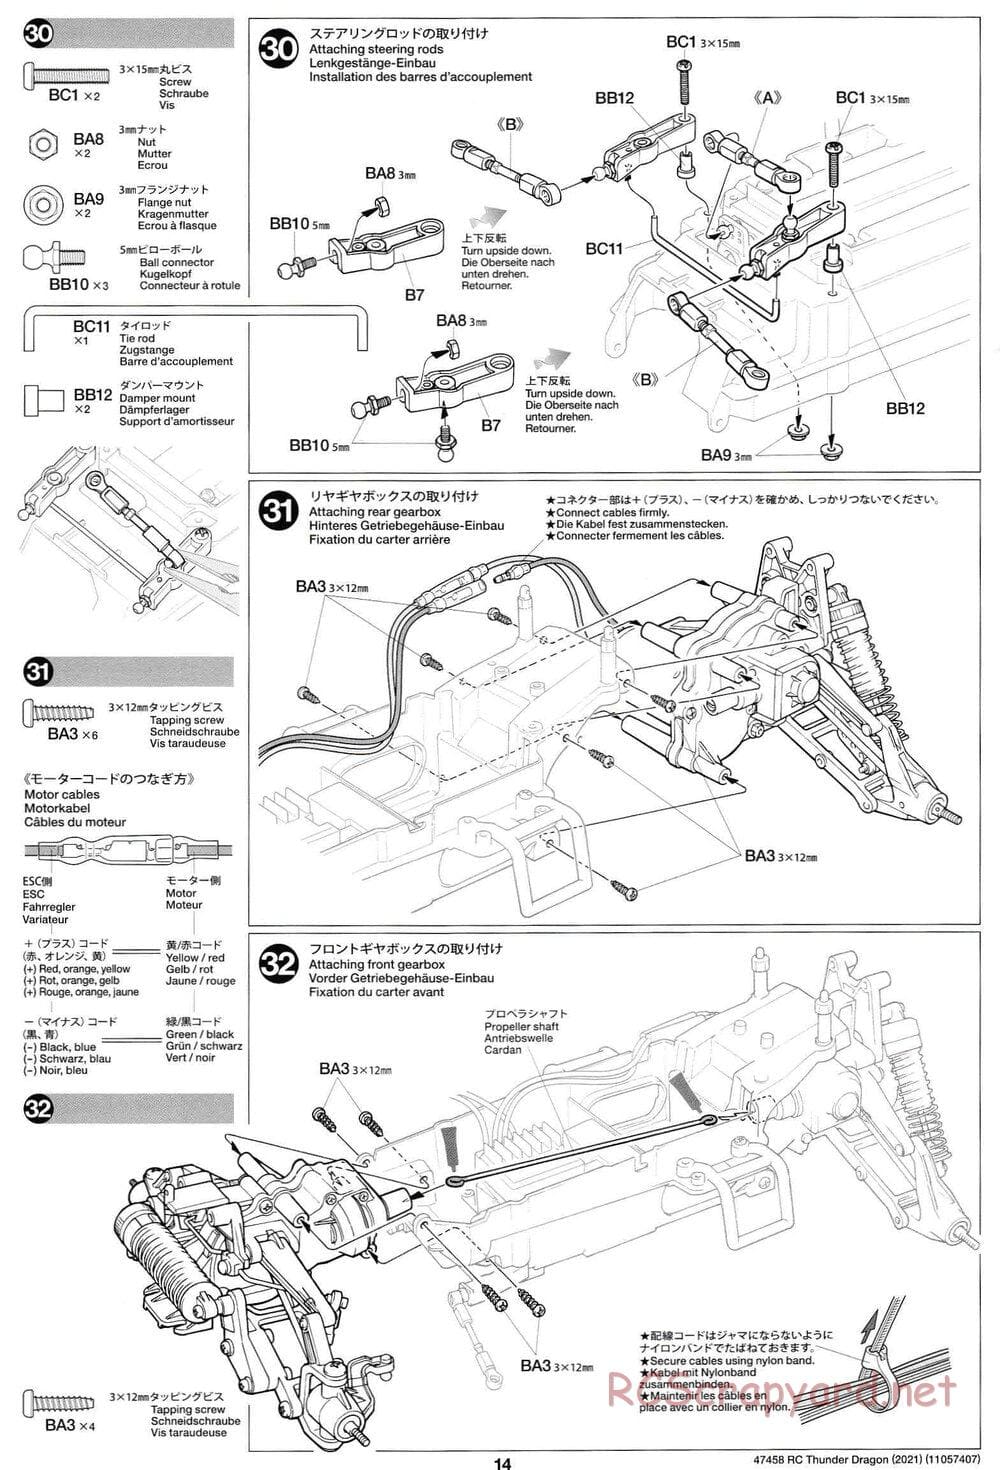 Tamiya - Thunder Dragon (2021) Chassis - Manual - Page 14